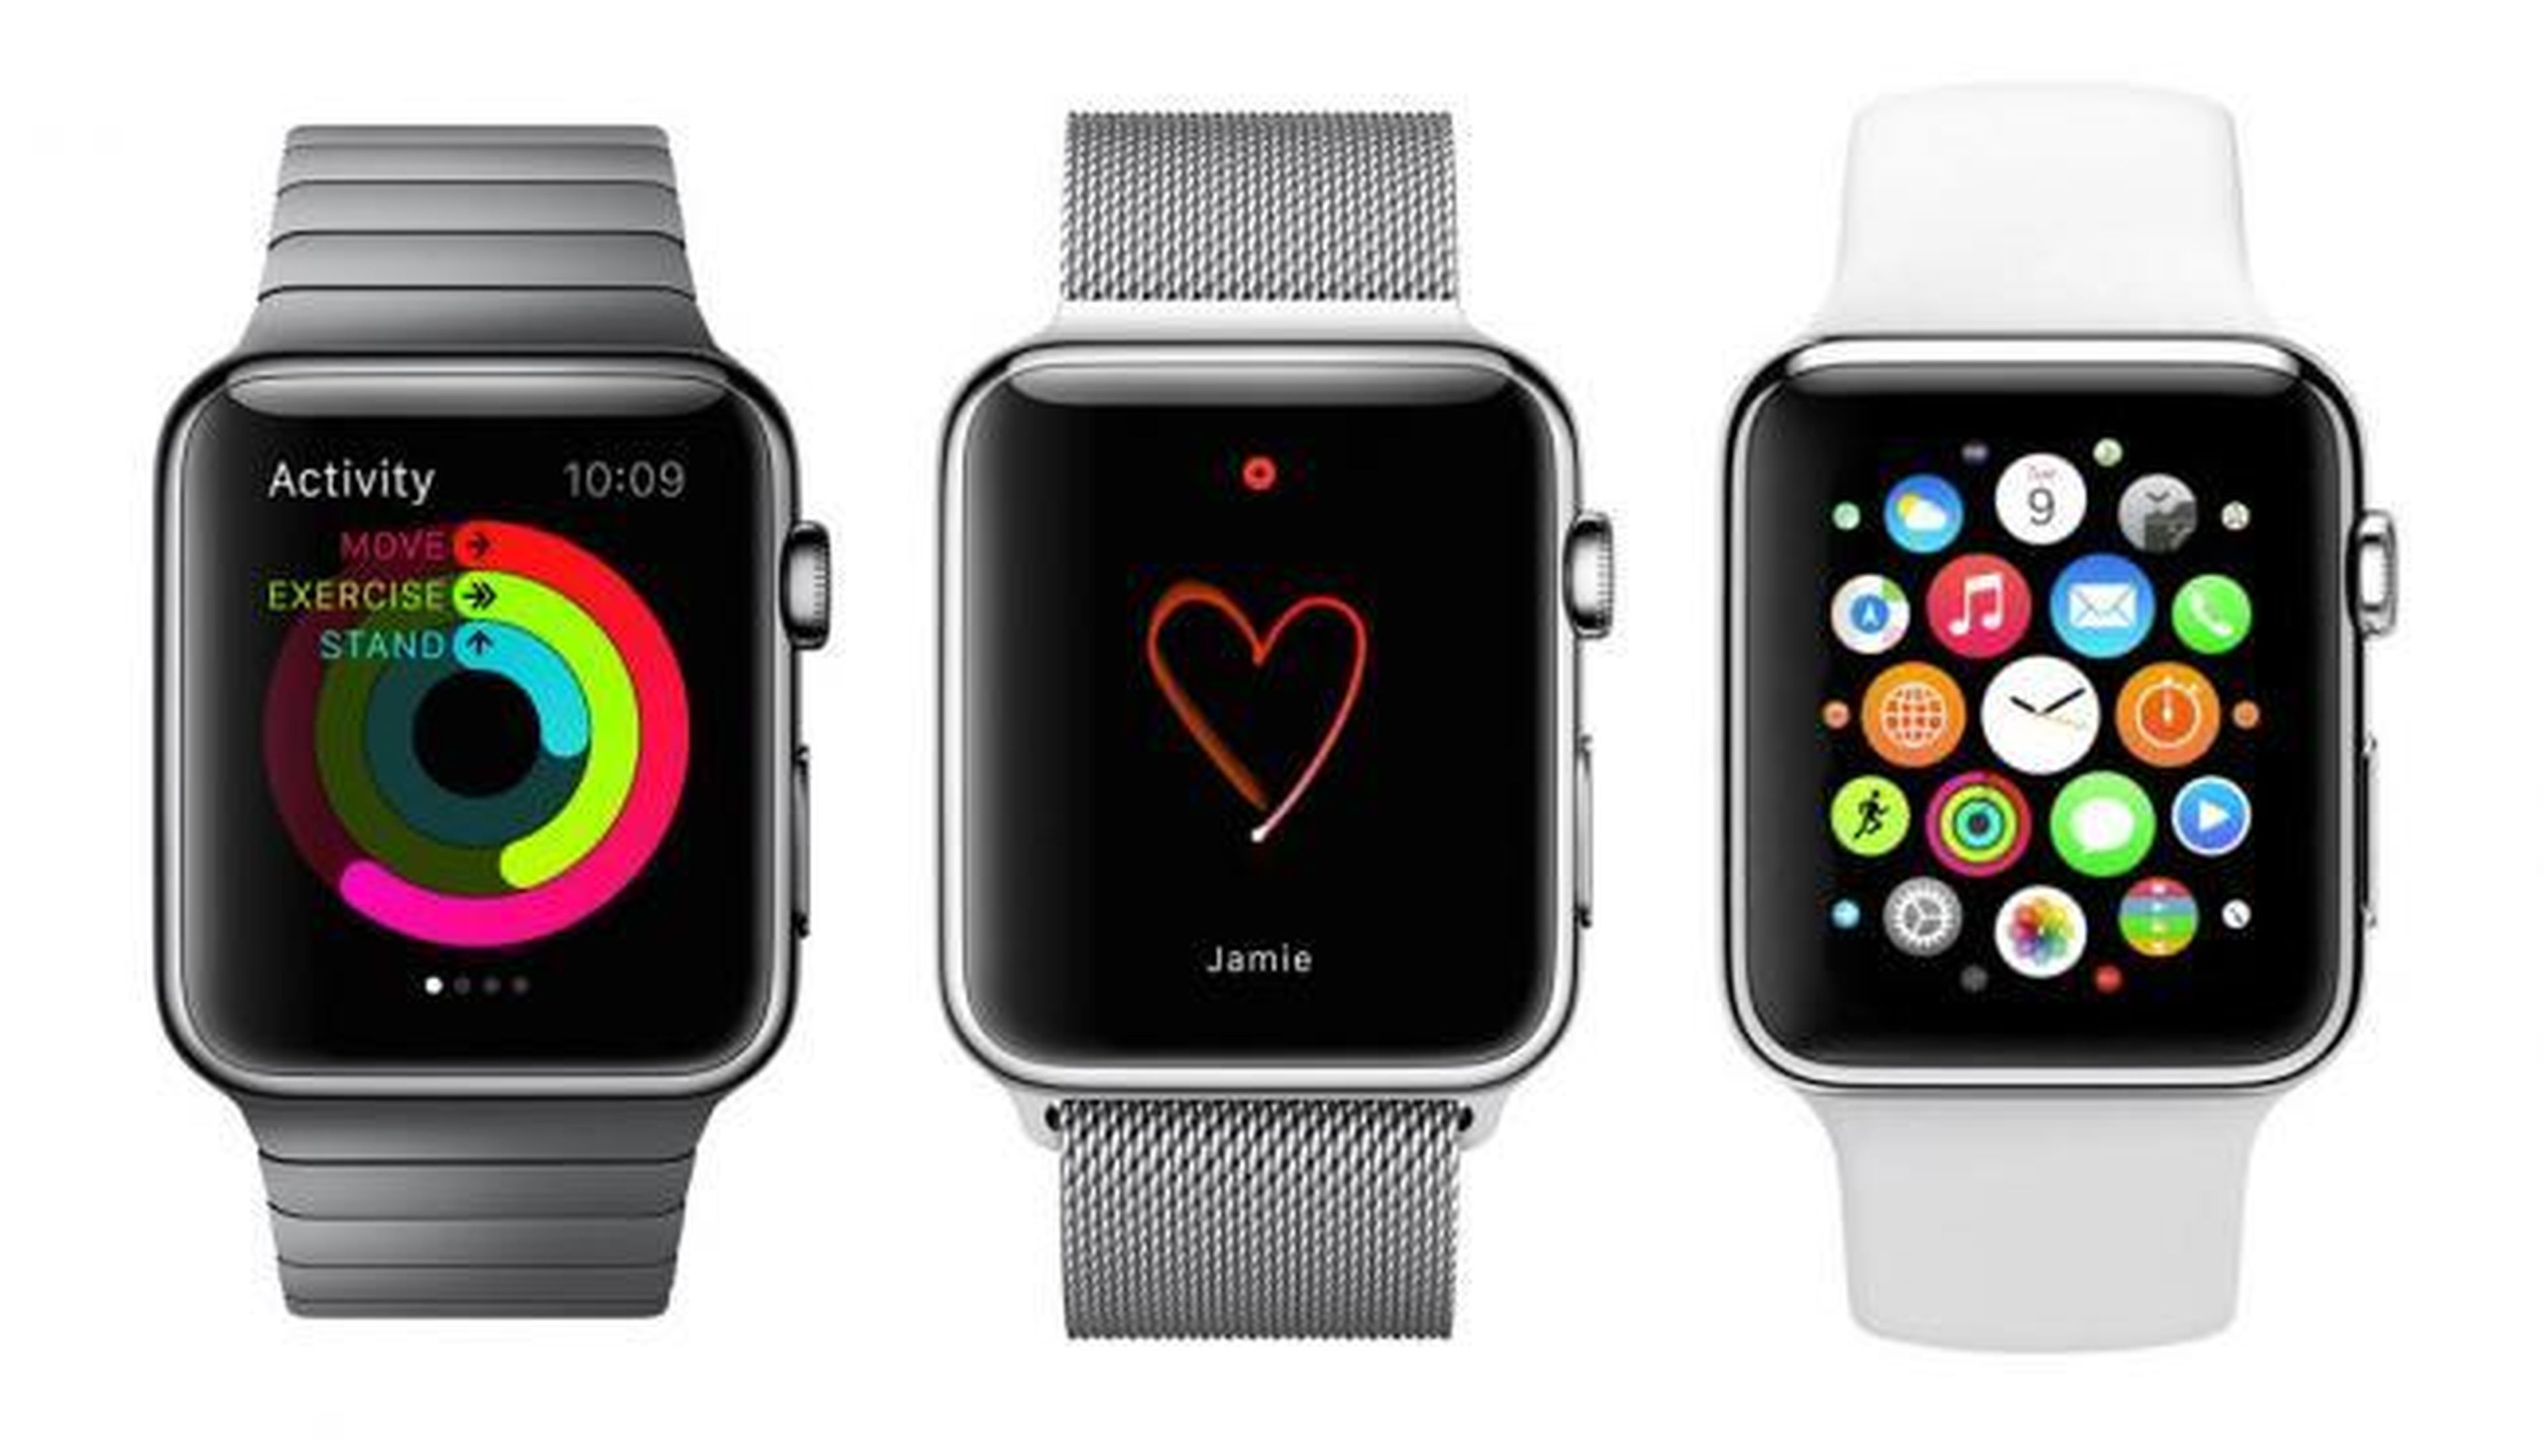 Apple Watch: 10 datos imprescindibles